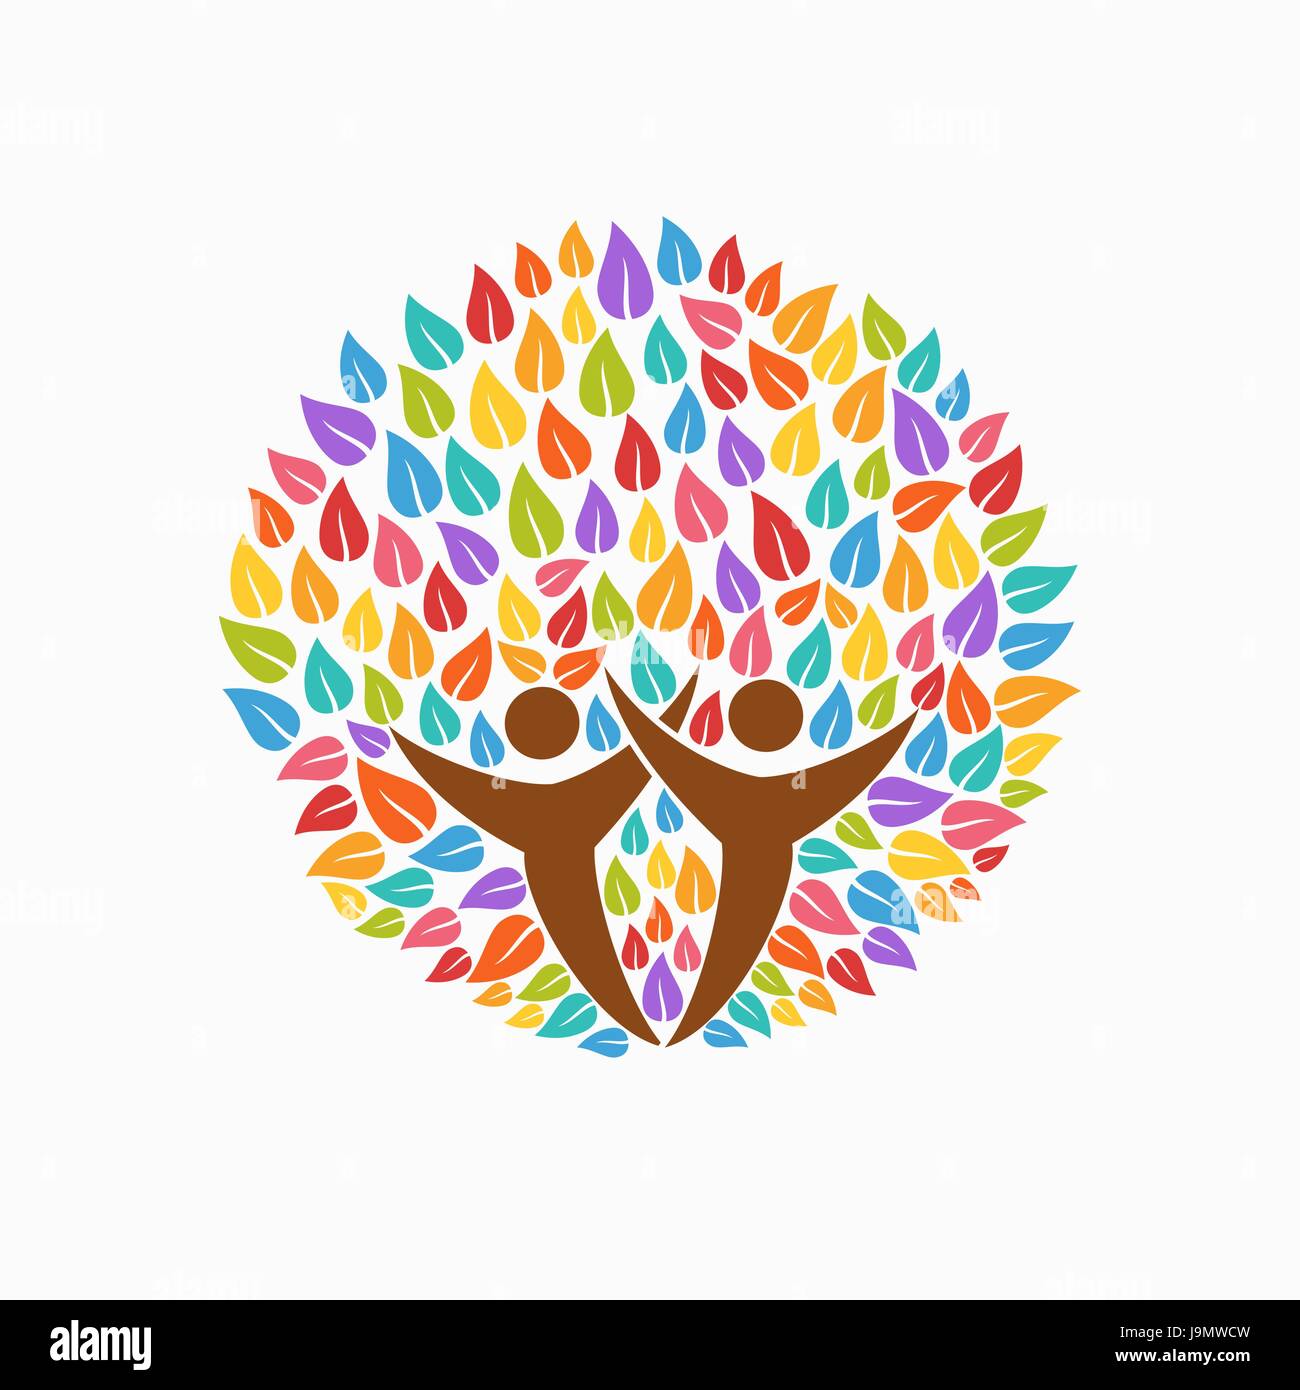 Multicolor Baum-Symbol mit Menschen-Silhouetten. Konzept-Illustration für Organisation Hilfe, Umweltprojekt oder Sozialarbeit. EPS10 Vektor. Stock Vektor